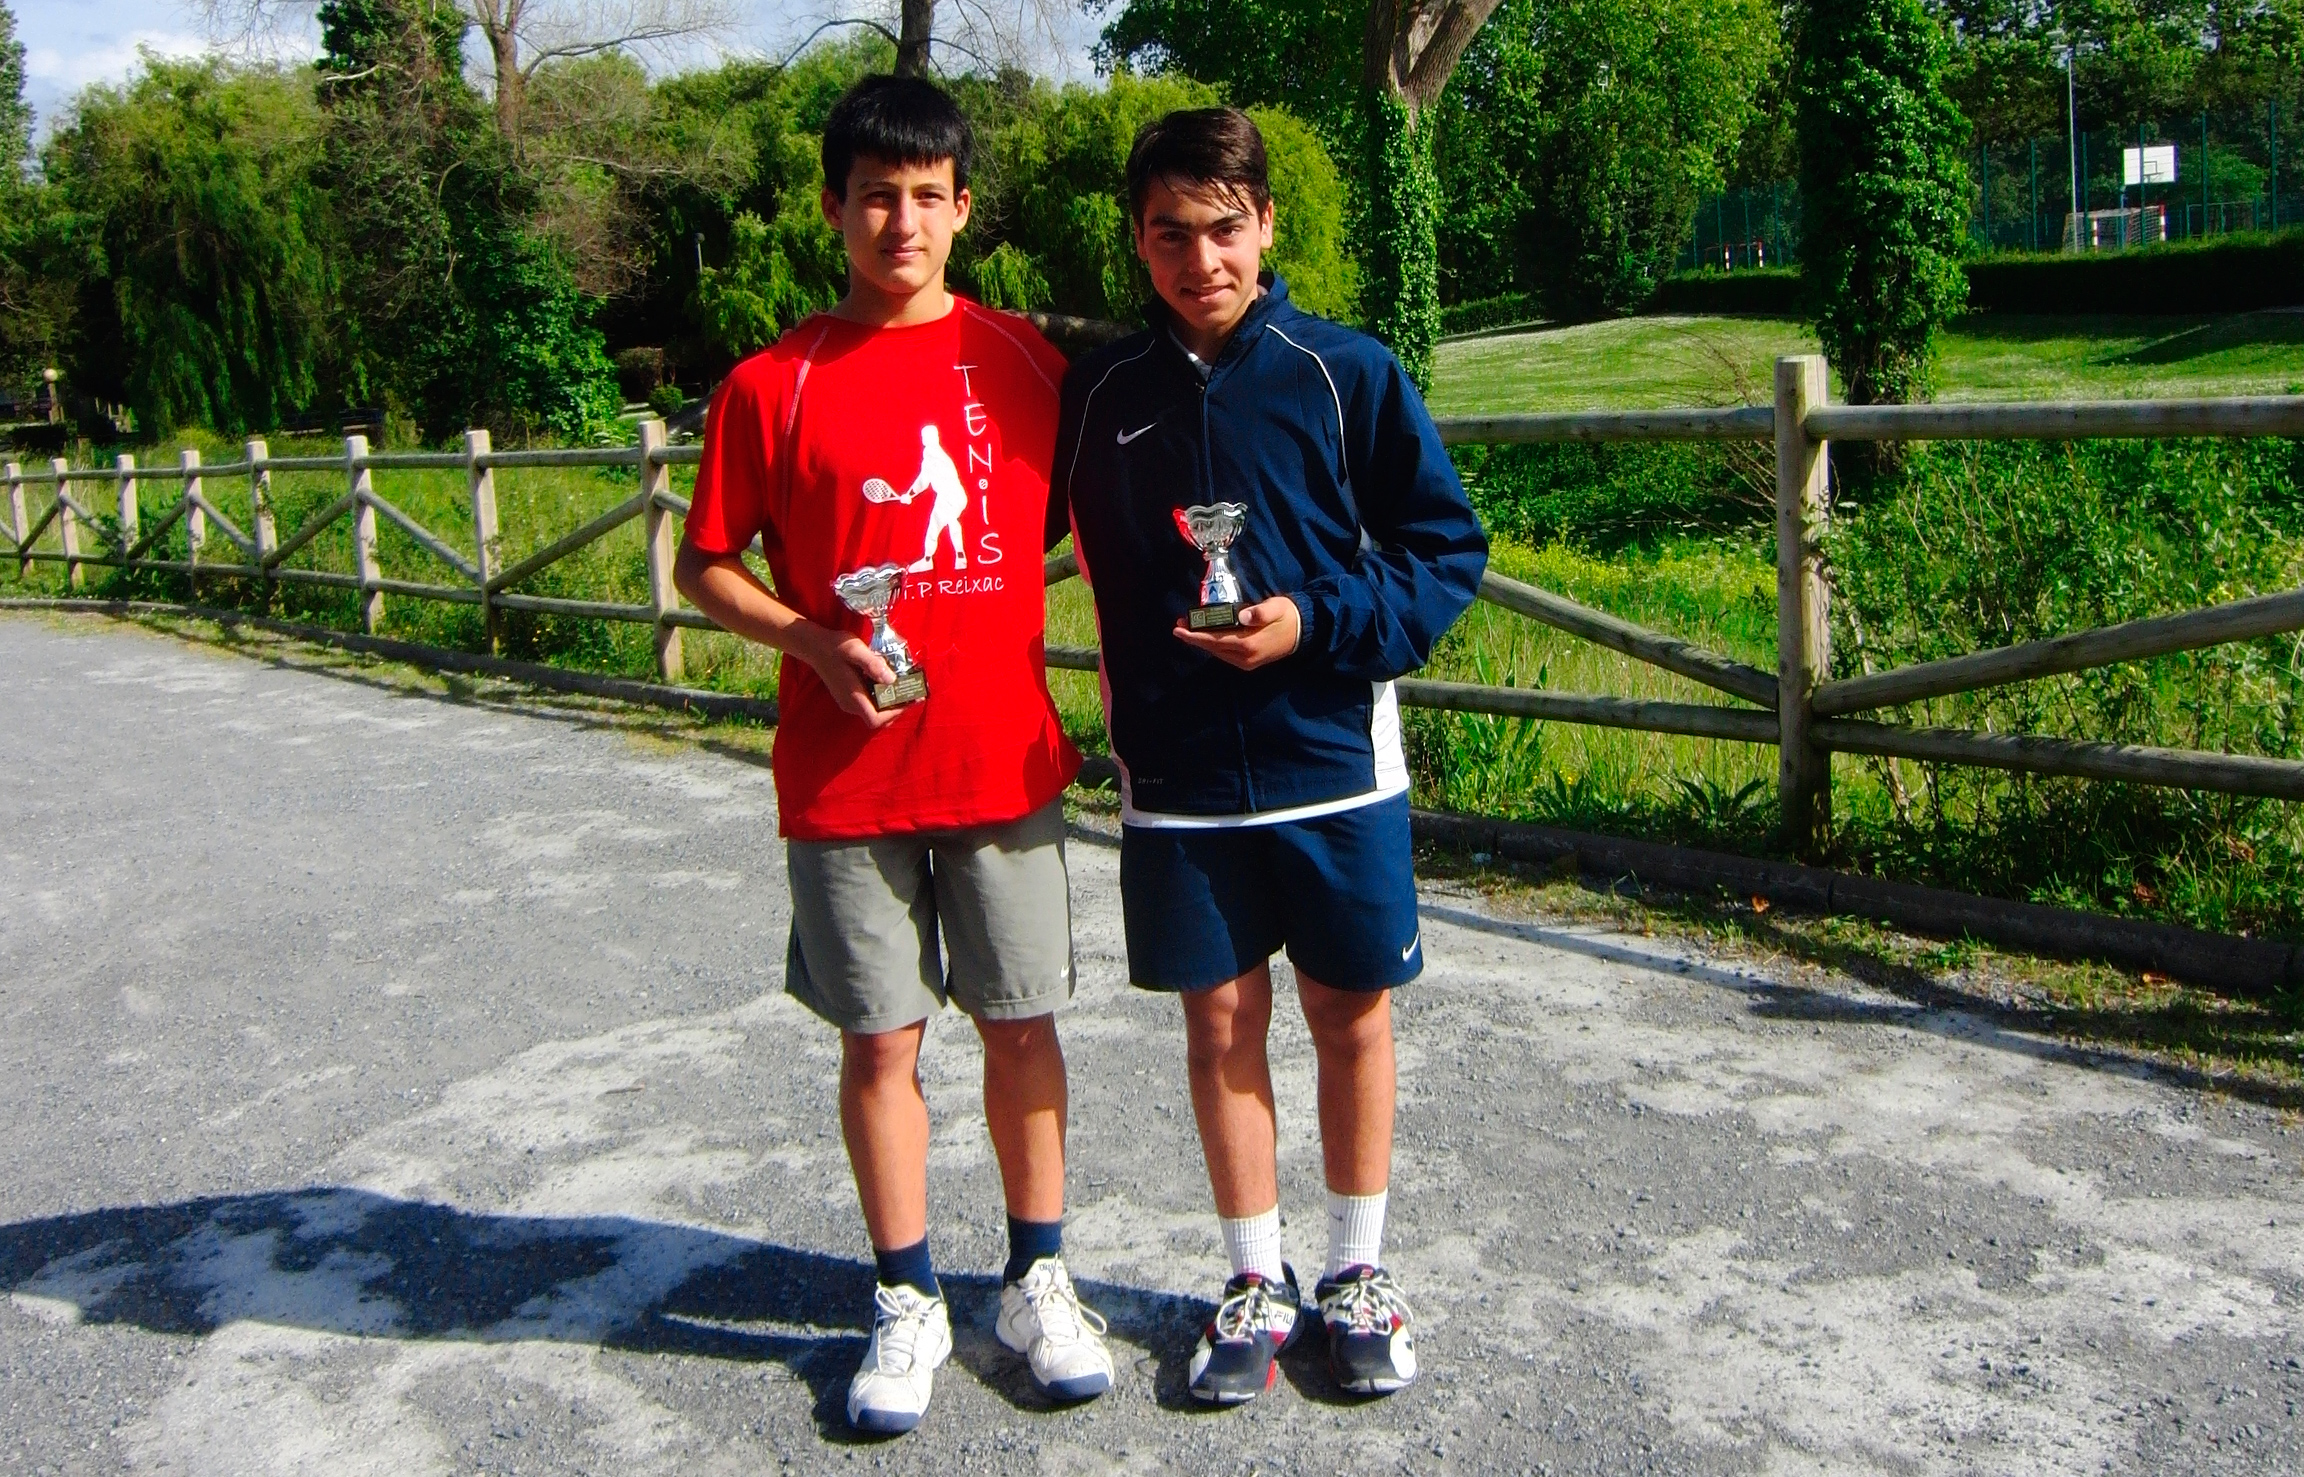 Campeones del Campeonato infantil de tenis Playas de Getxo de 2014